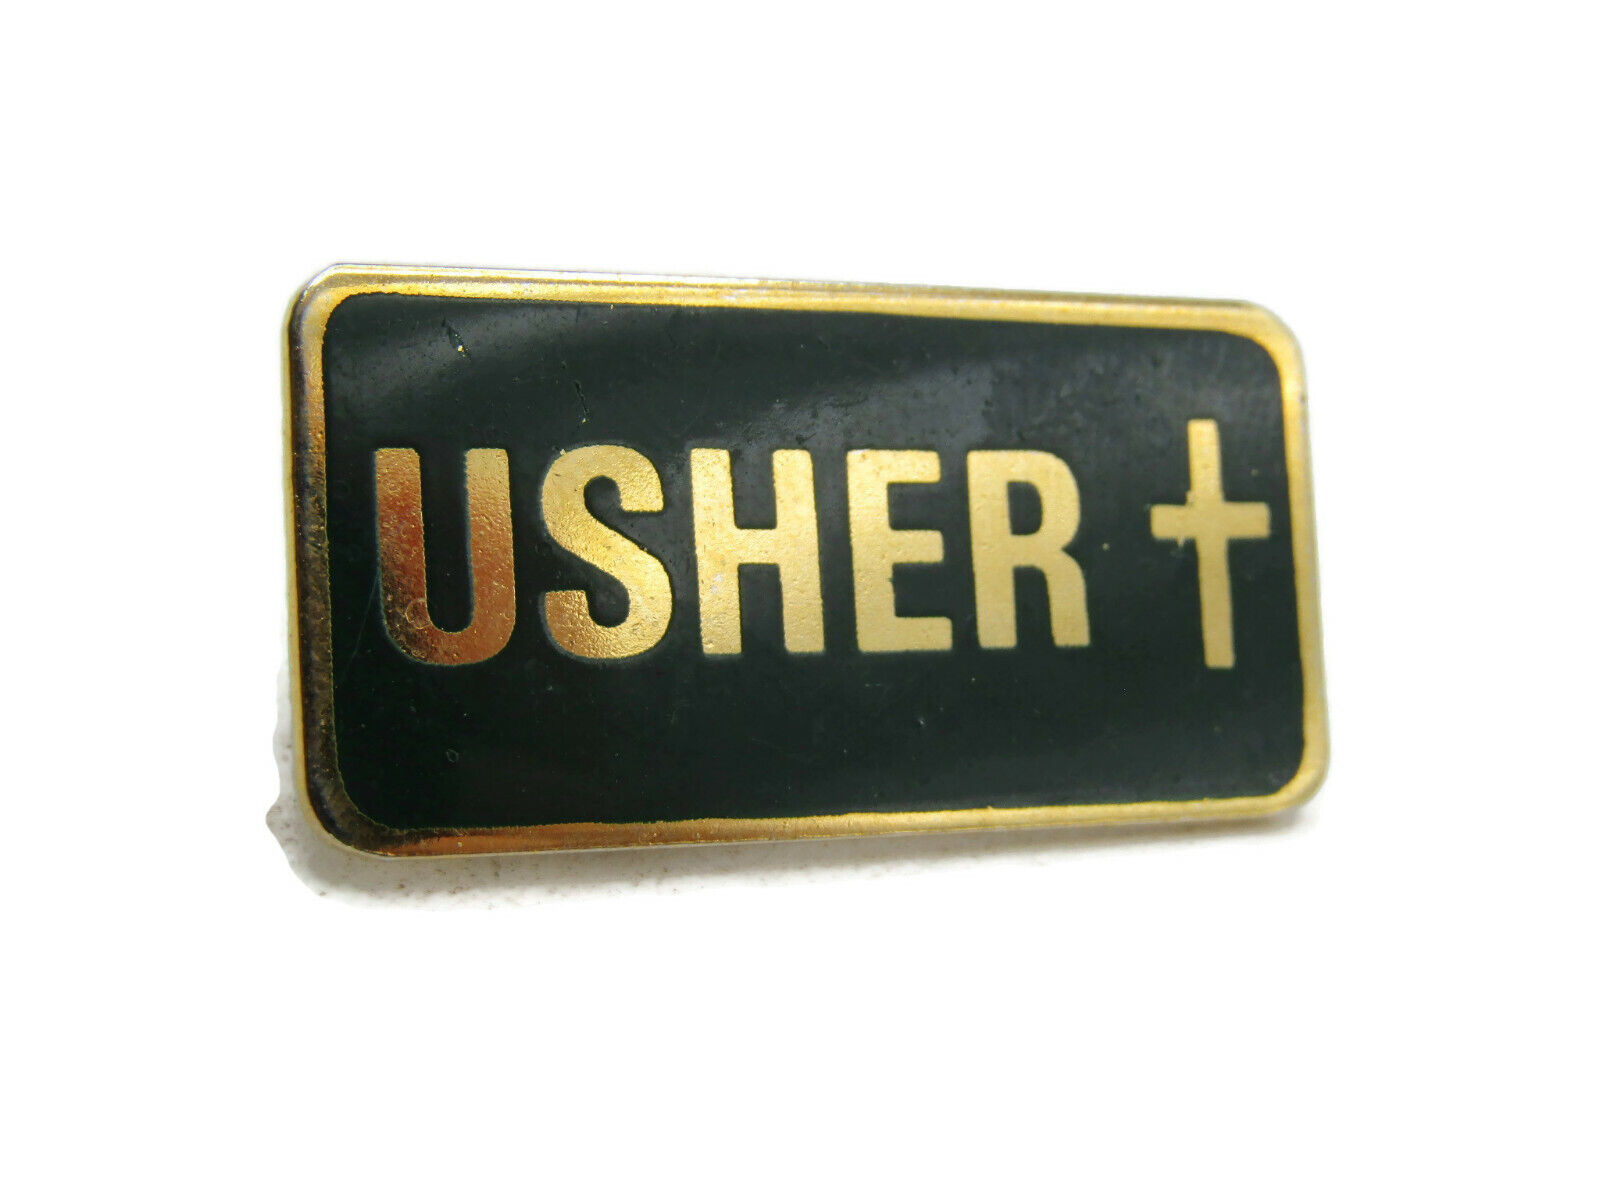 Usher Lettered Pin Dark Green Background Cross & Gold Tone